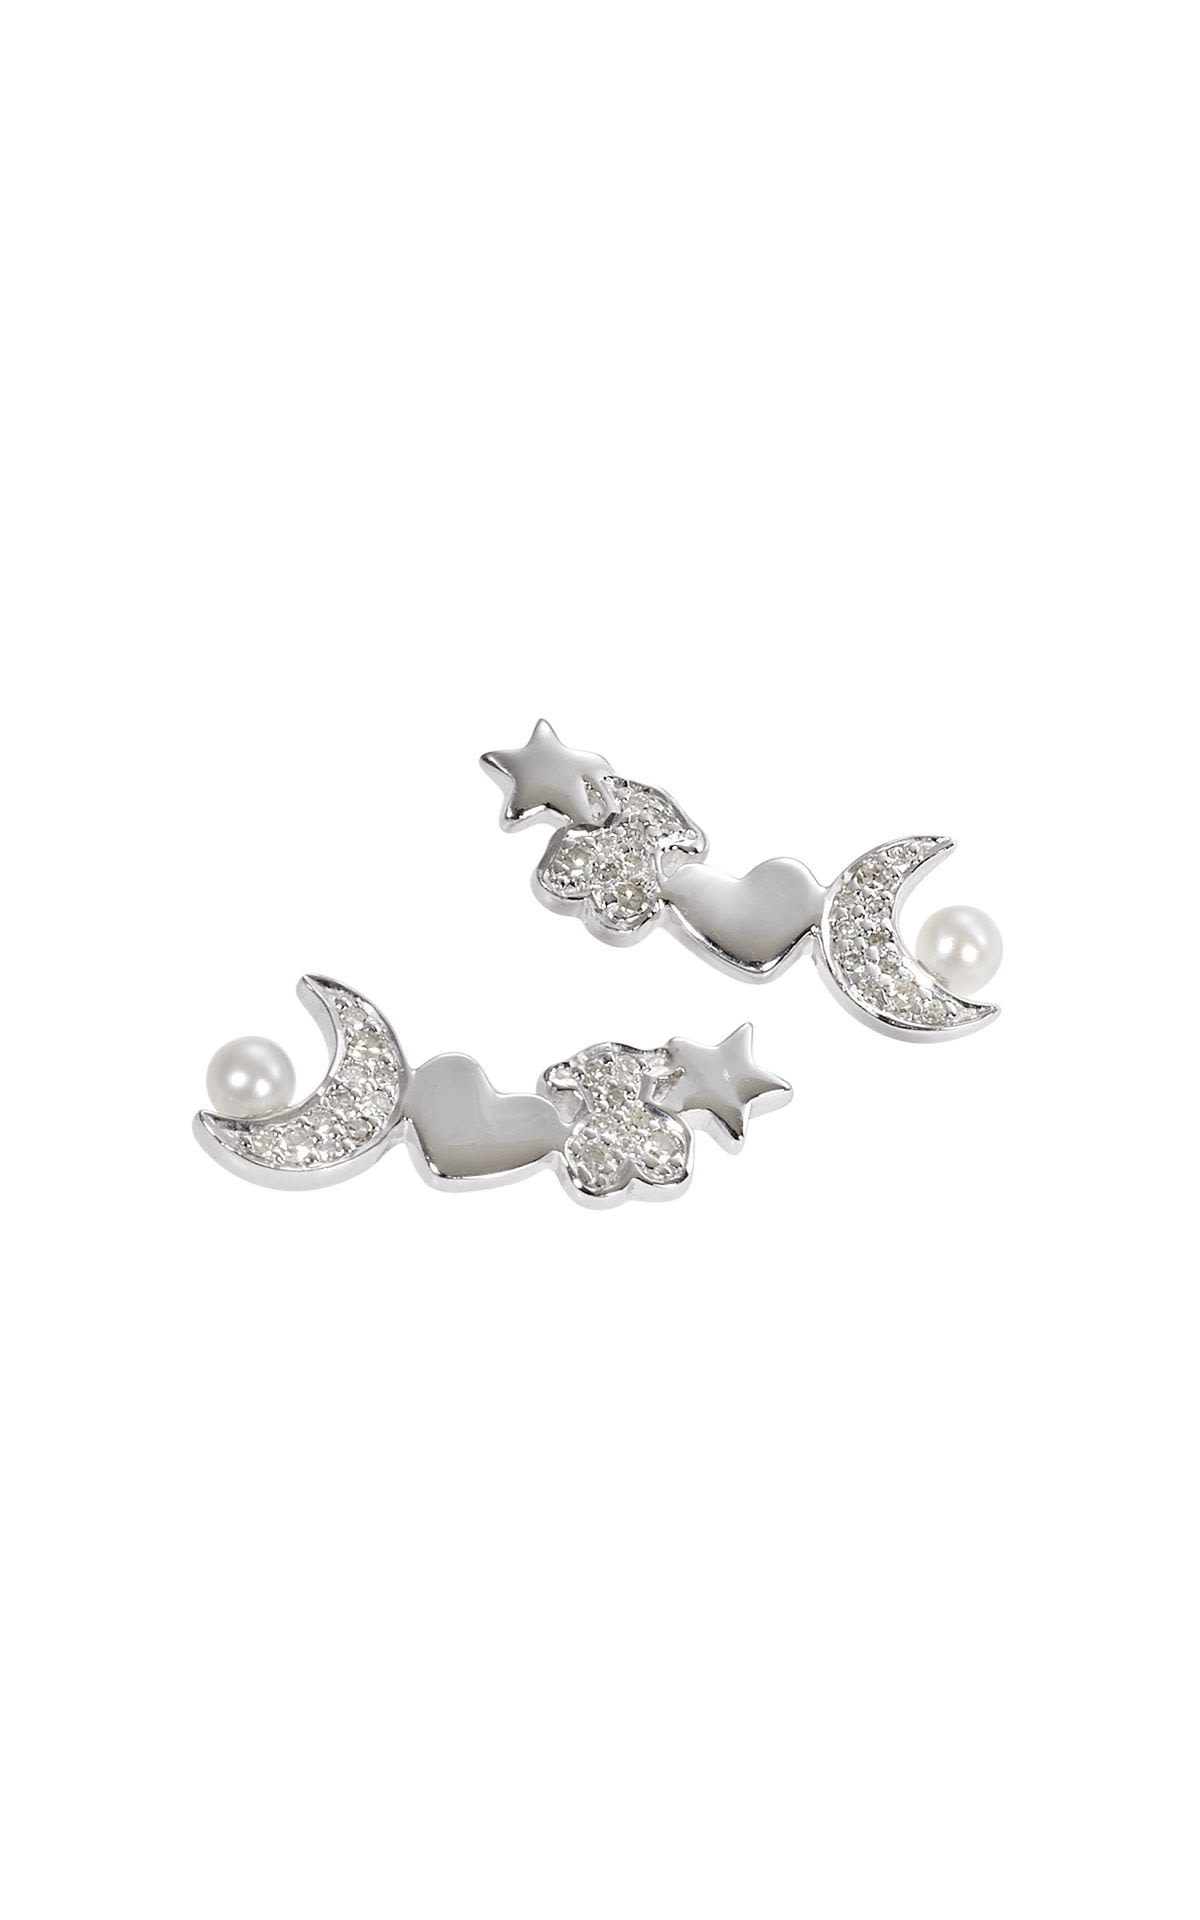 Silver earrings tous